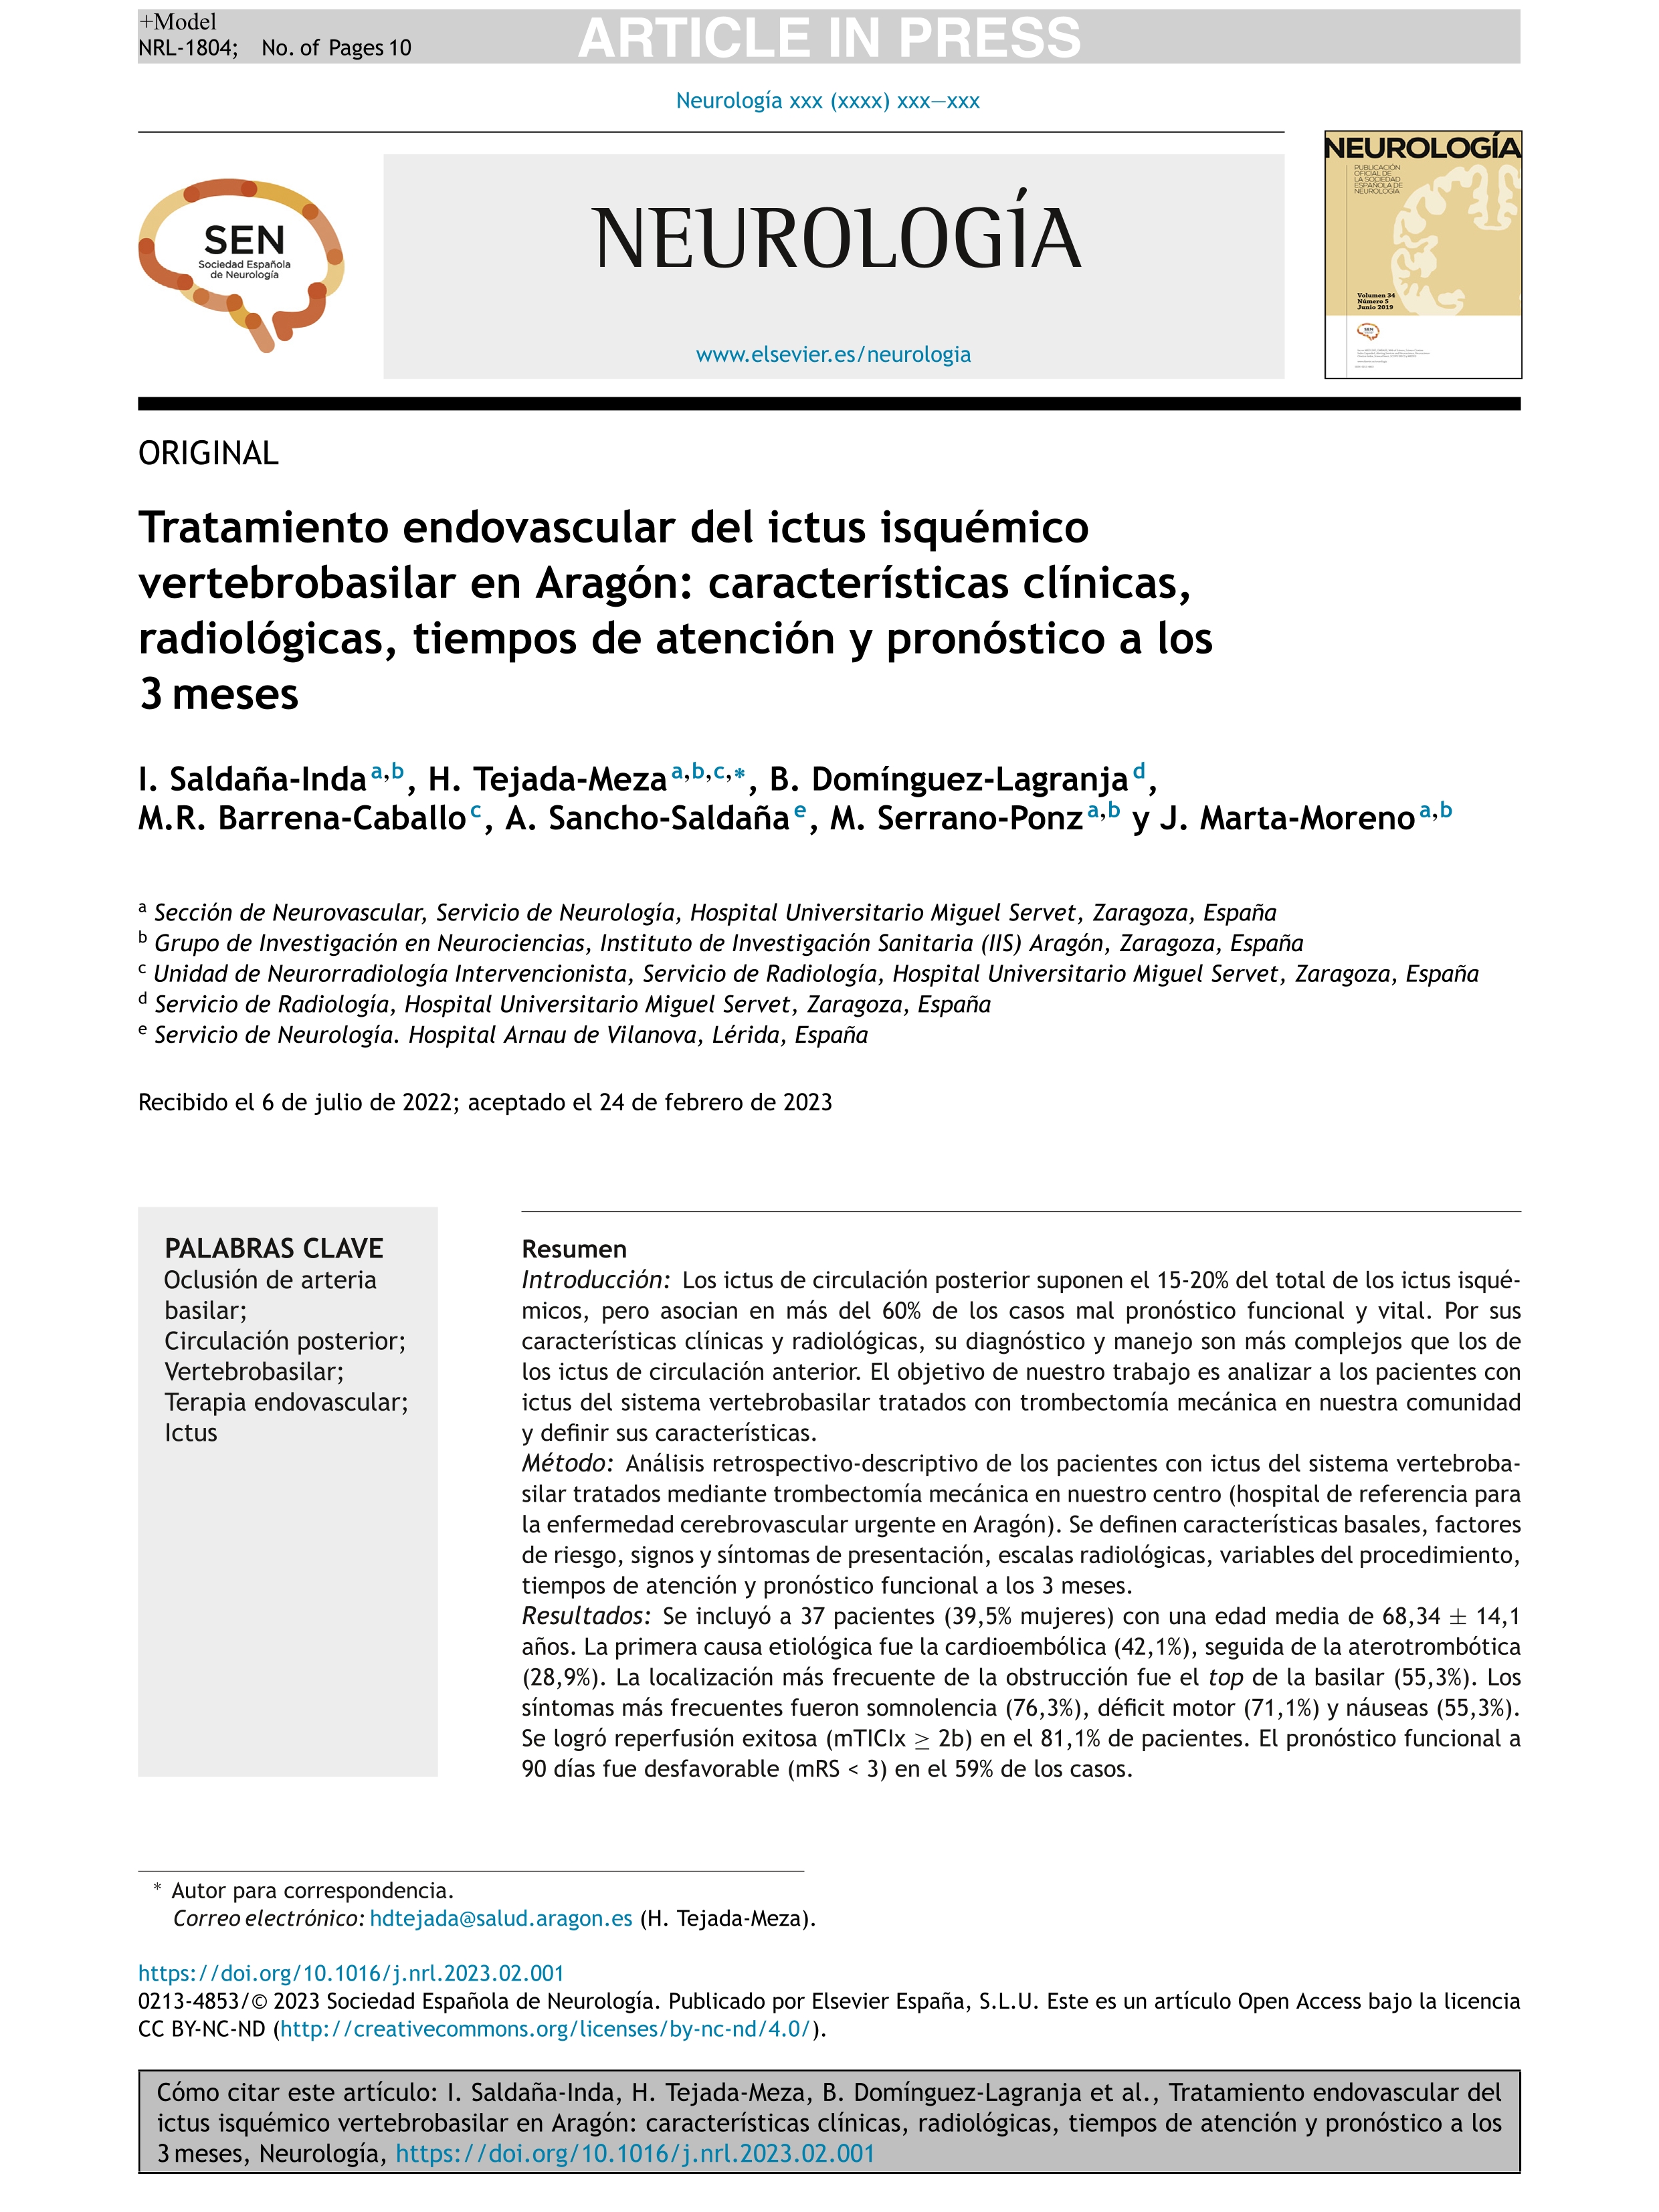 Tratamiento endovascular del ictus isquémico vertebrobasilar en Aragón: características clínicas, radiológicas, tiempos de atención y pronóstico a los 3 meses